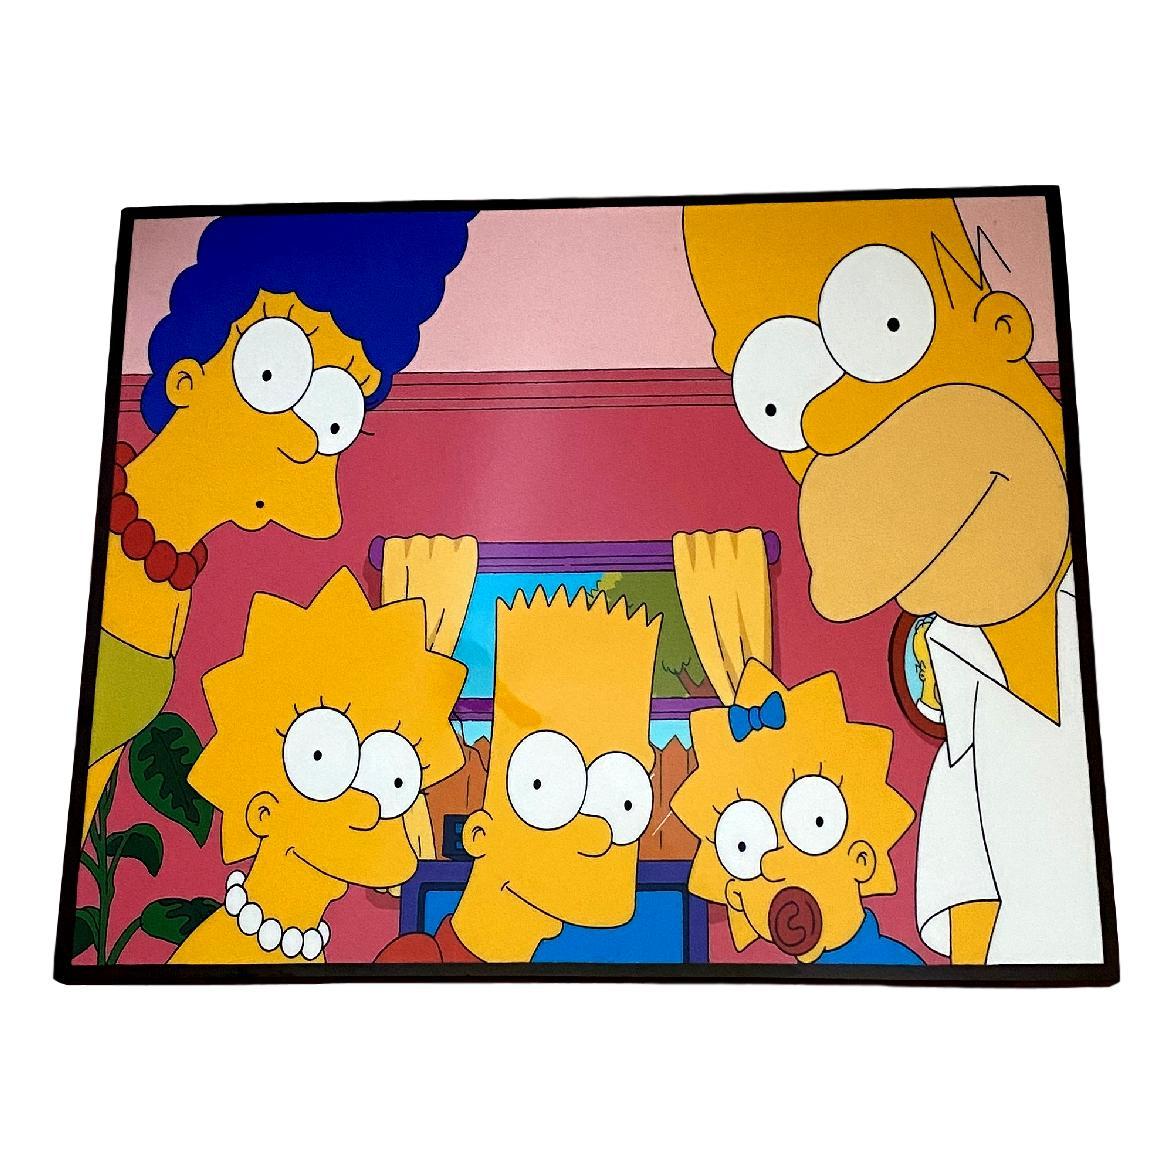 ポップ ビンテージ クール なデザインあります 送料無料 ザ シンプソンズ The Simpsons アートパネル 壁掛け 据え置き 壁掛けフック付き アーティスト Popパネル インテリア アートフレーム ポスター Cool 面白い かっこいい アート 雑貨 カフェ リビング 額付き 額縁